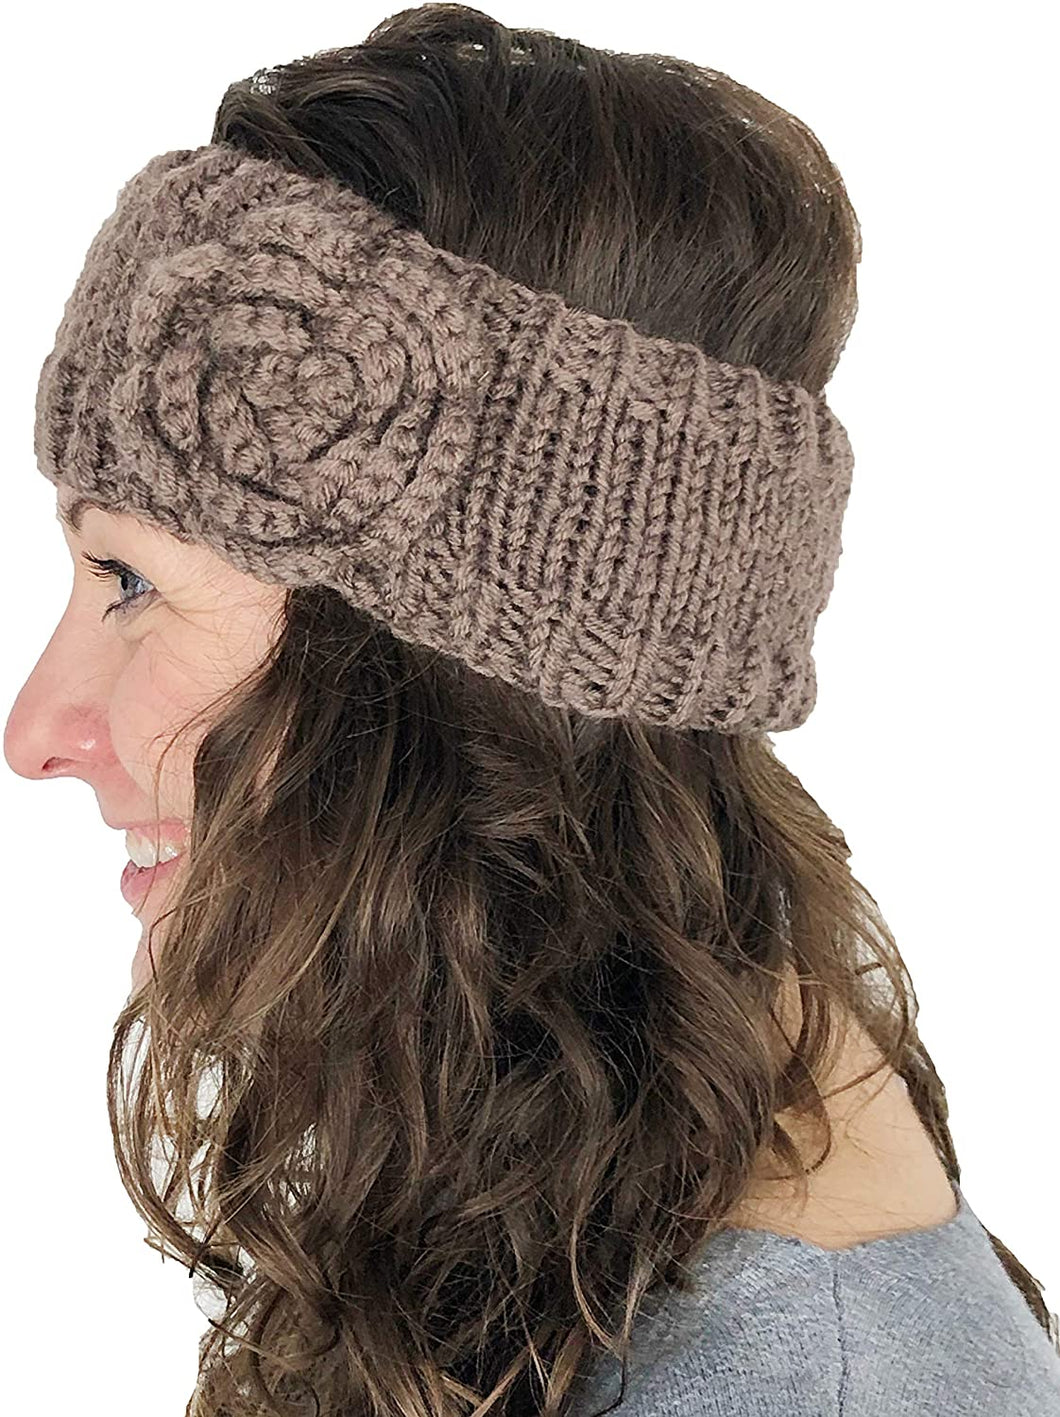 Brown woollen machine knitted headband with flower. Warm winter headband